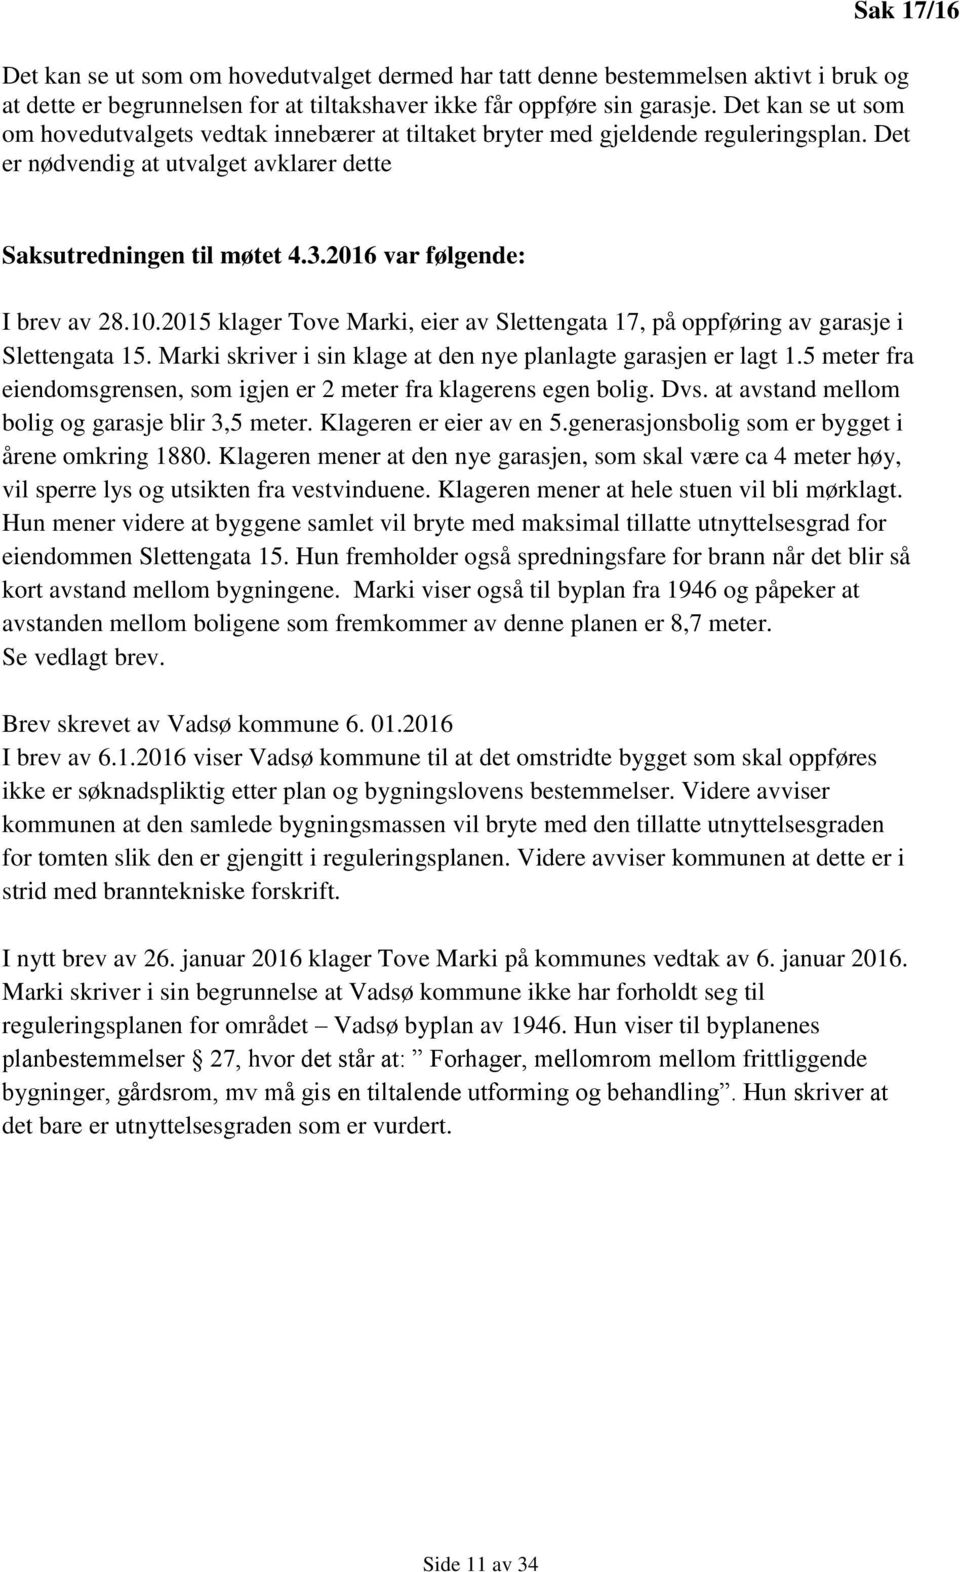 2016 var følgende: I brev av 28.10.2015 klager Tove Marki, eier av Slettengata 17, på oppføring av garasje i Slettengata 15. Marki skriver i sin klage at den nye planlagte garasjen er lagt 1.